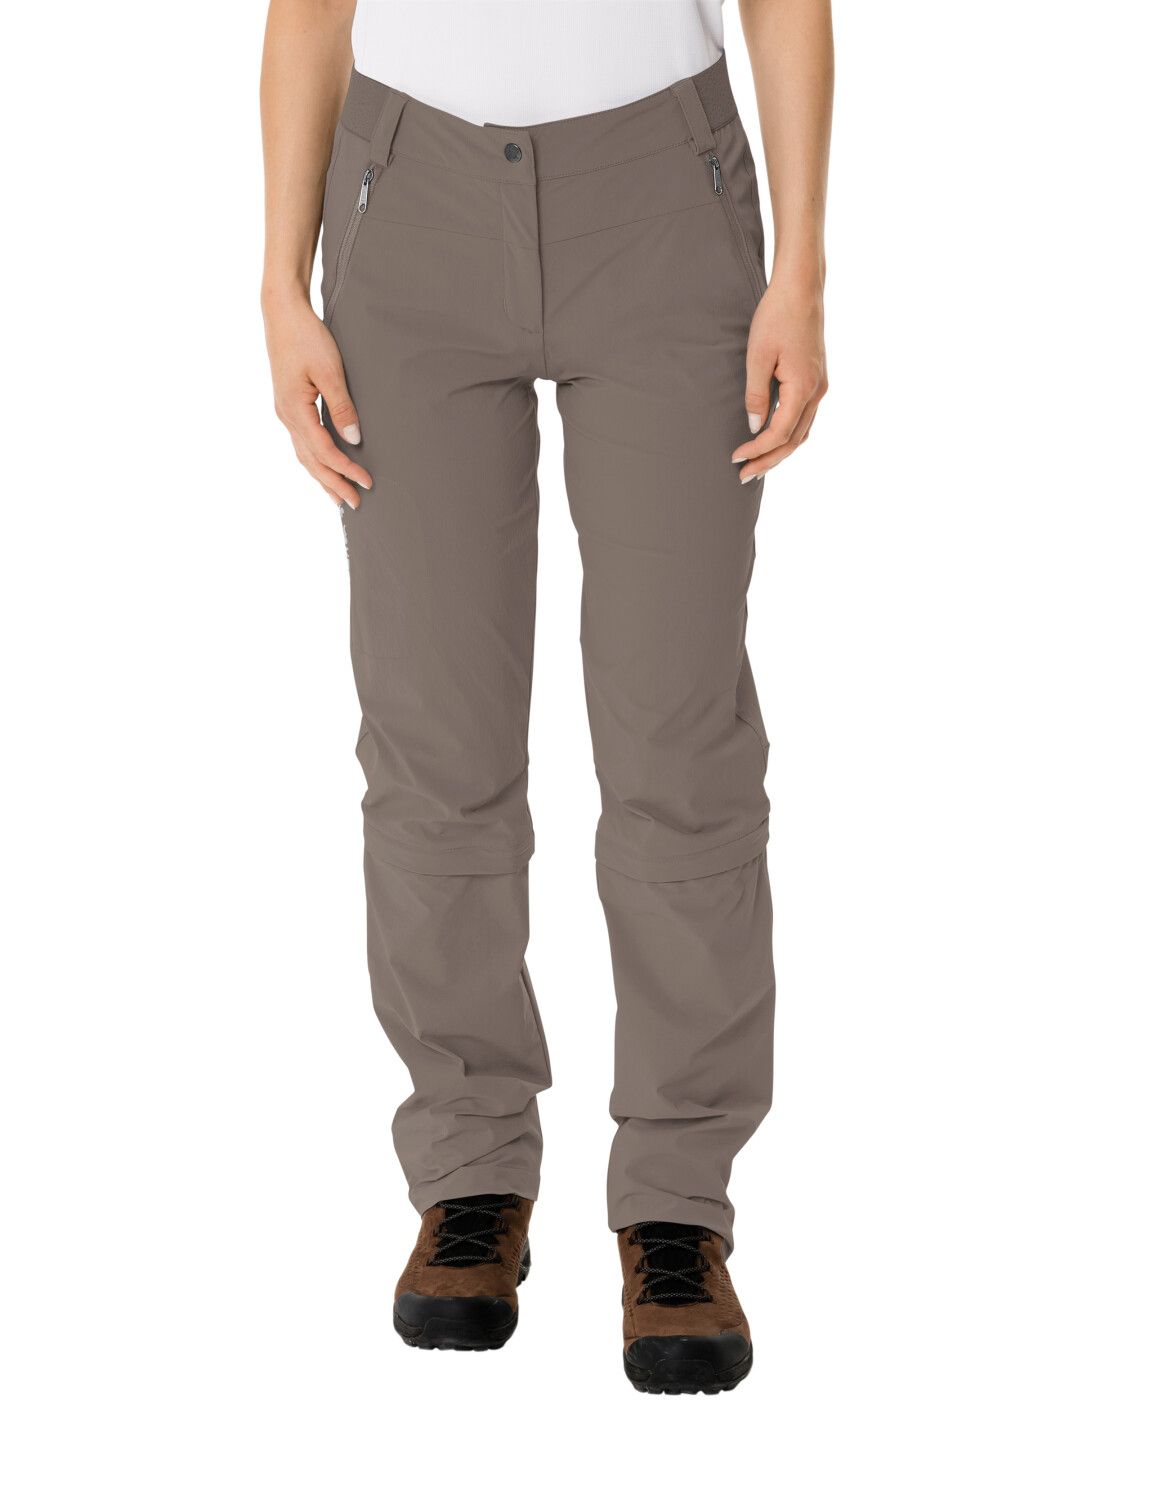 VAUDE Women's Farley Stretch Capri T-Zip Pants III (Bild 12)